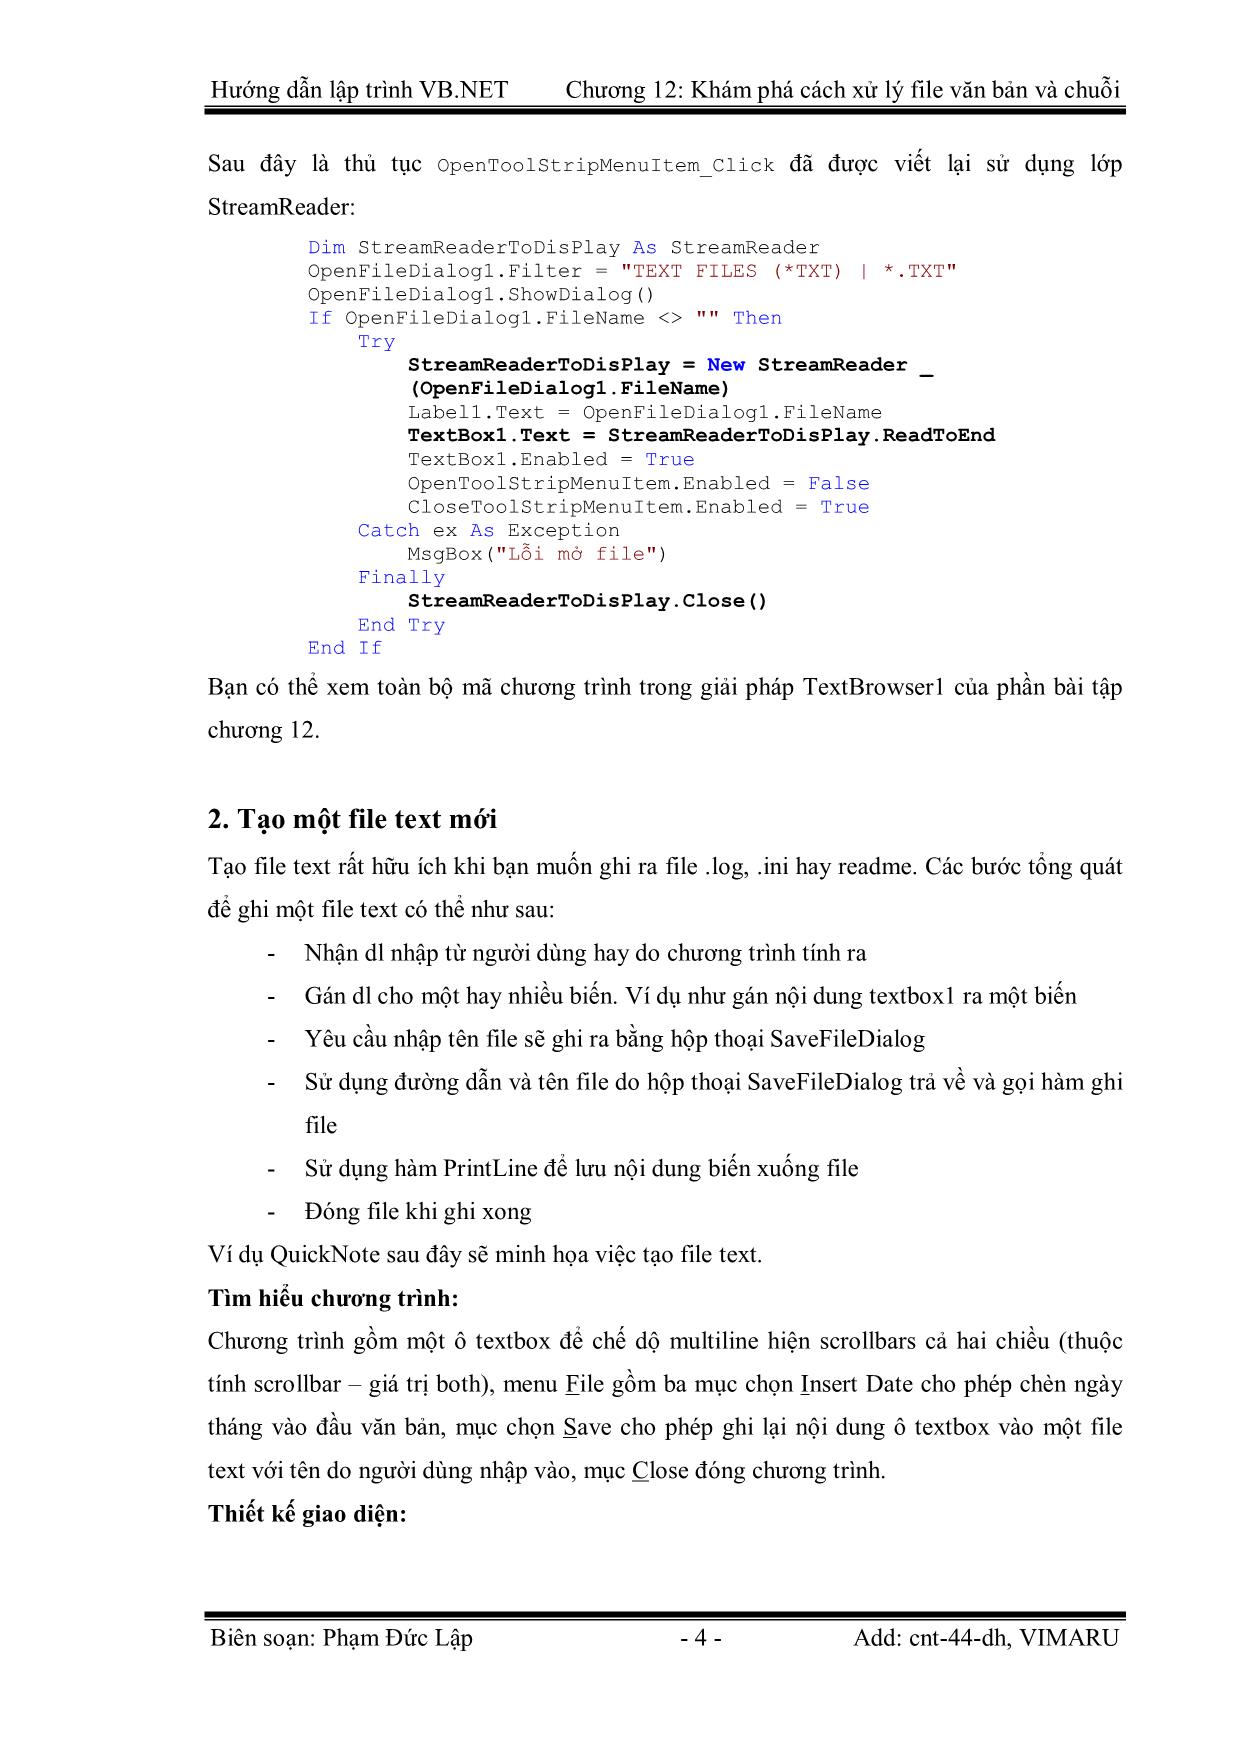 Giáo trình Hướng dẫn lập trình VB.NET - Chương 12: Khám phá cách xử lý File Text và chuỗi - Phạm Đức Lập trang 4